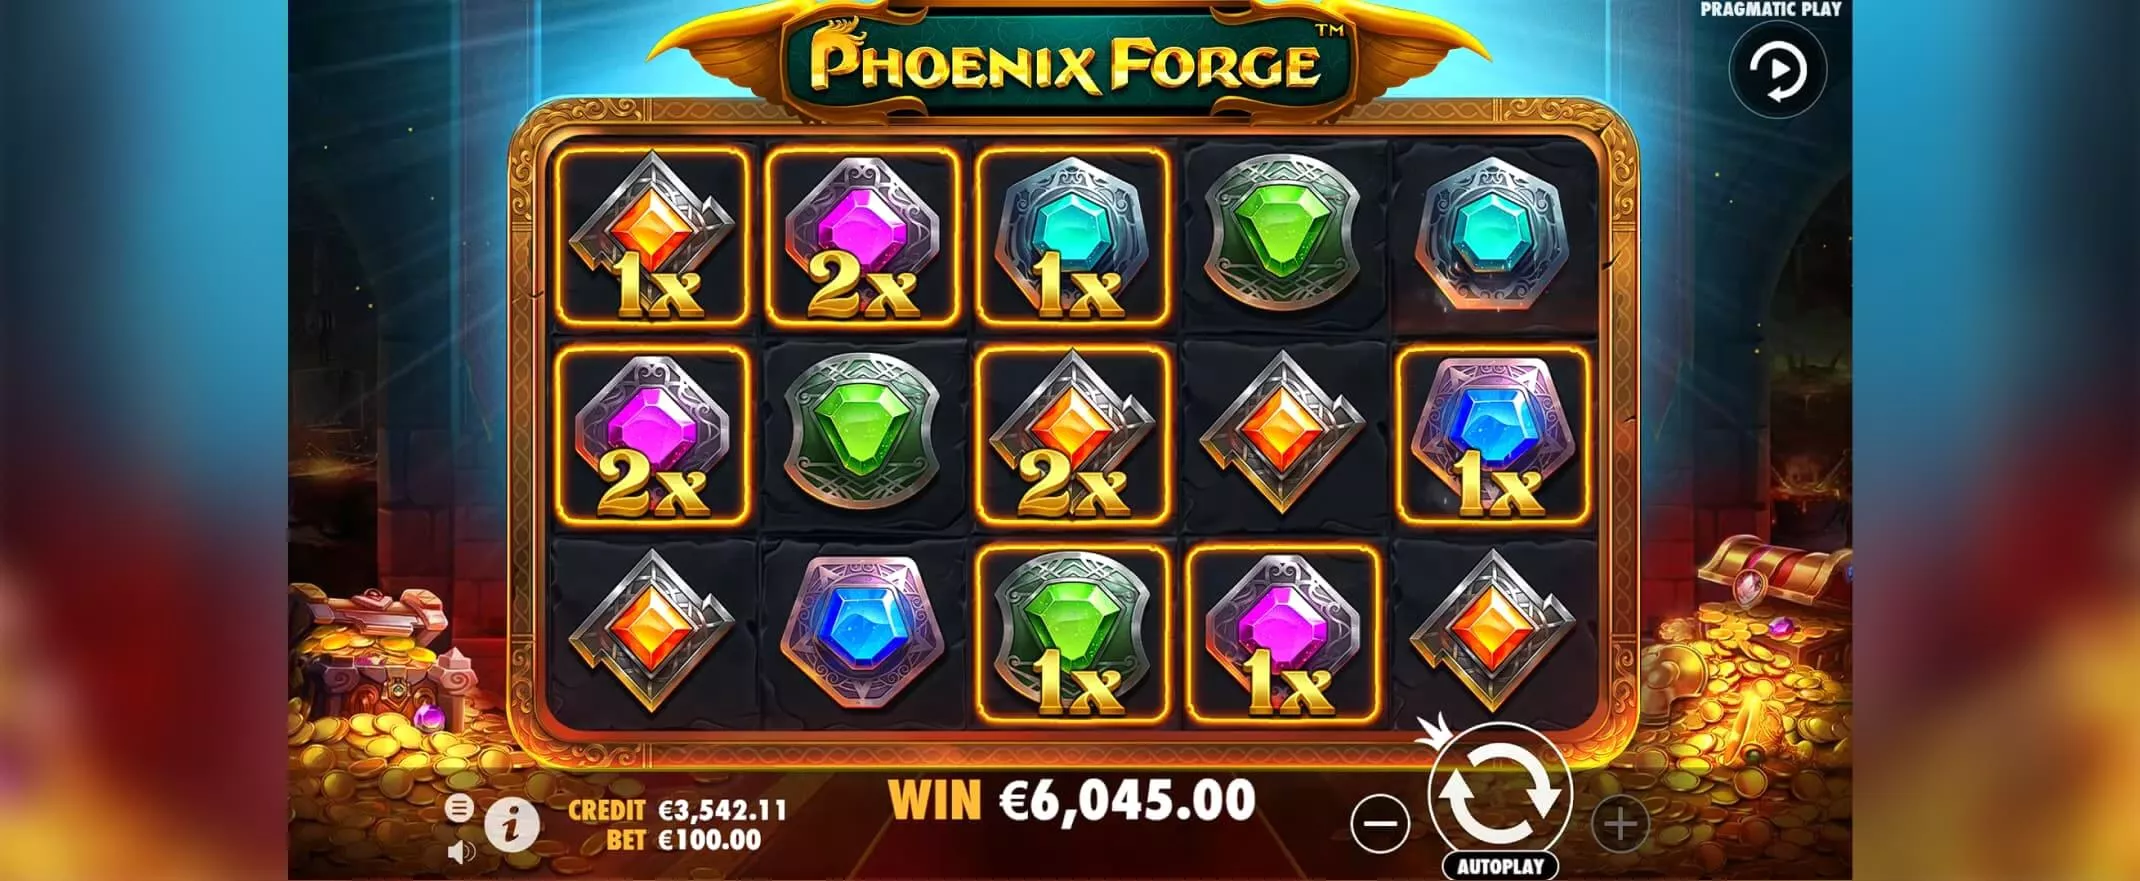 Phoenix Forge slot screenshot of the reels